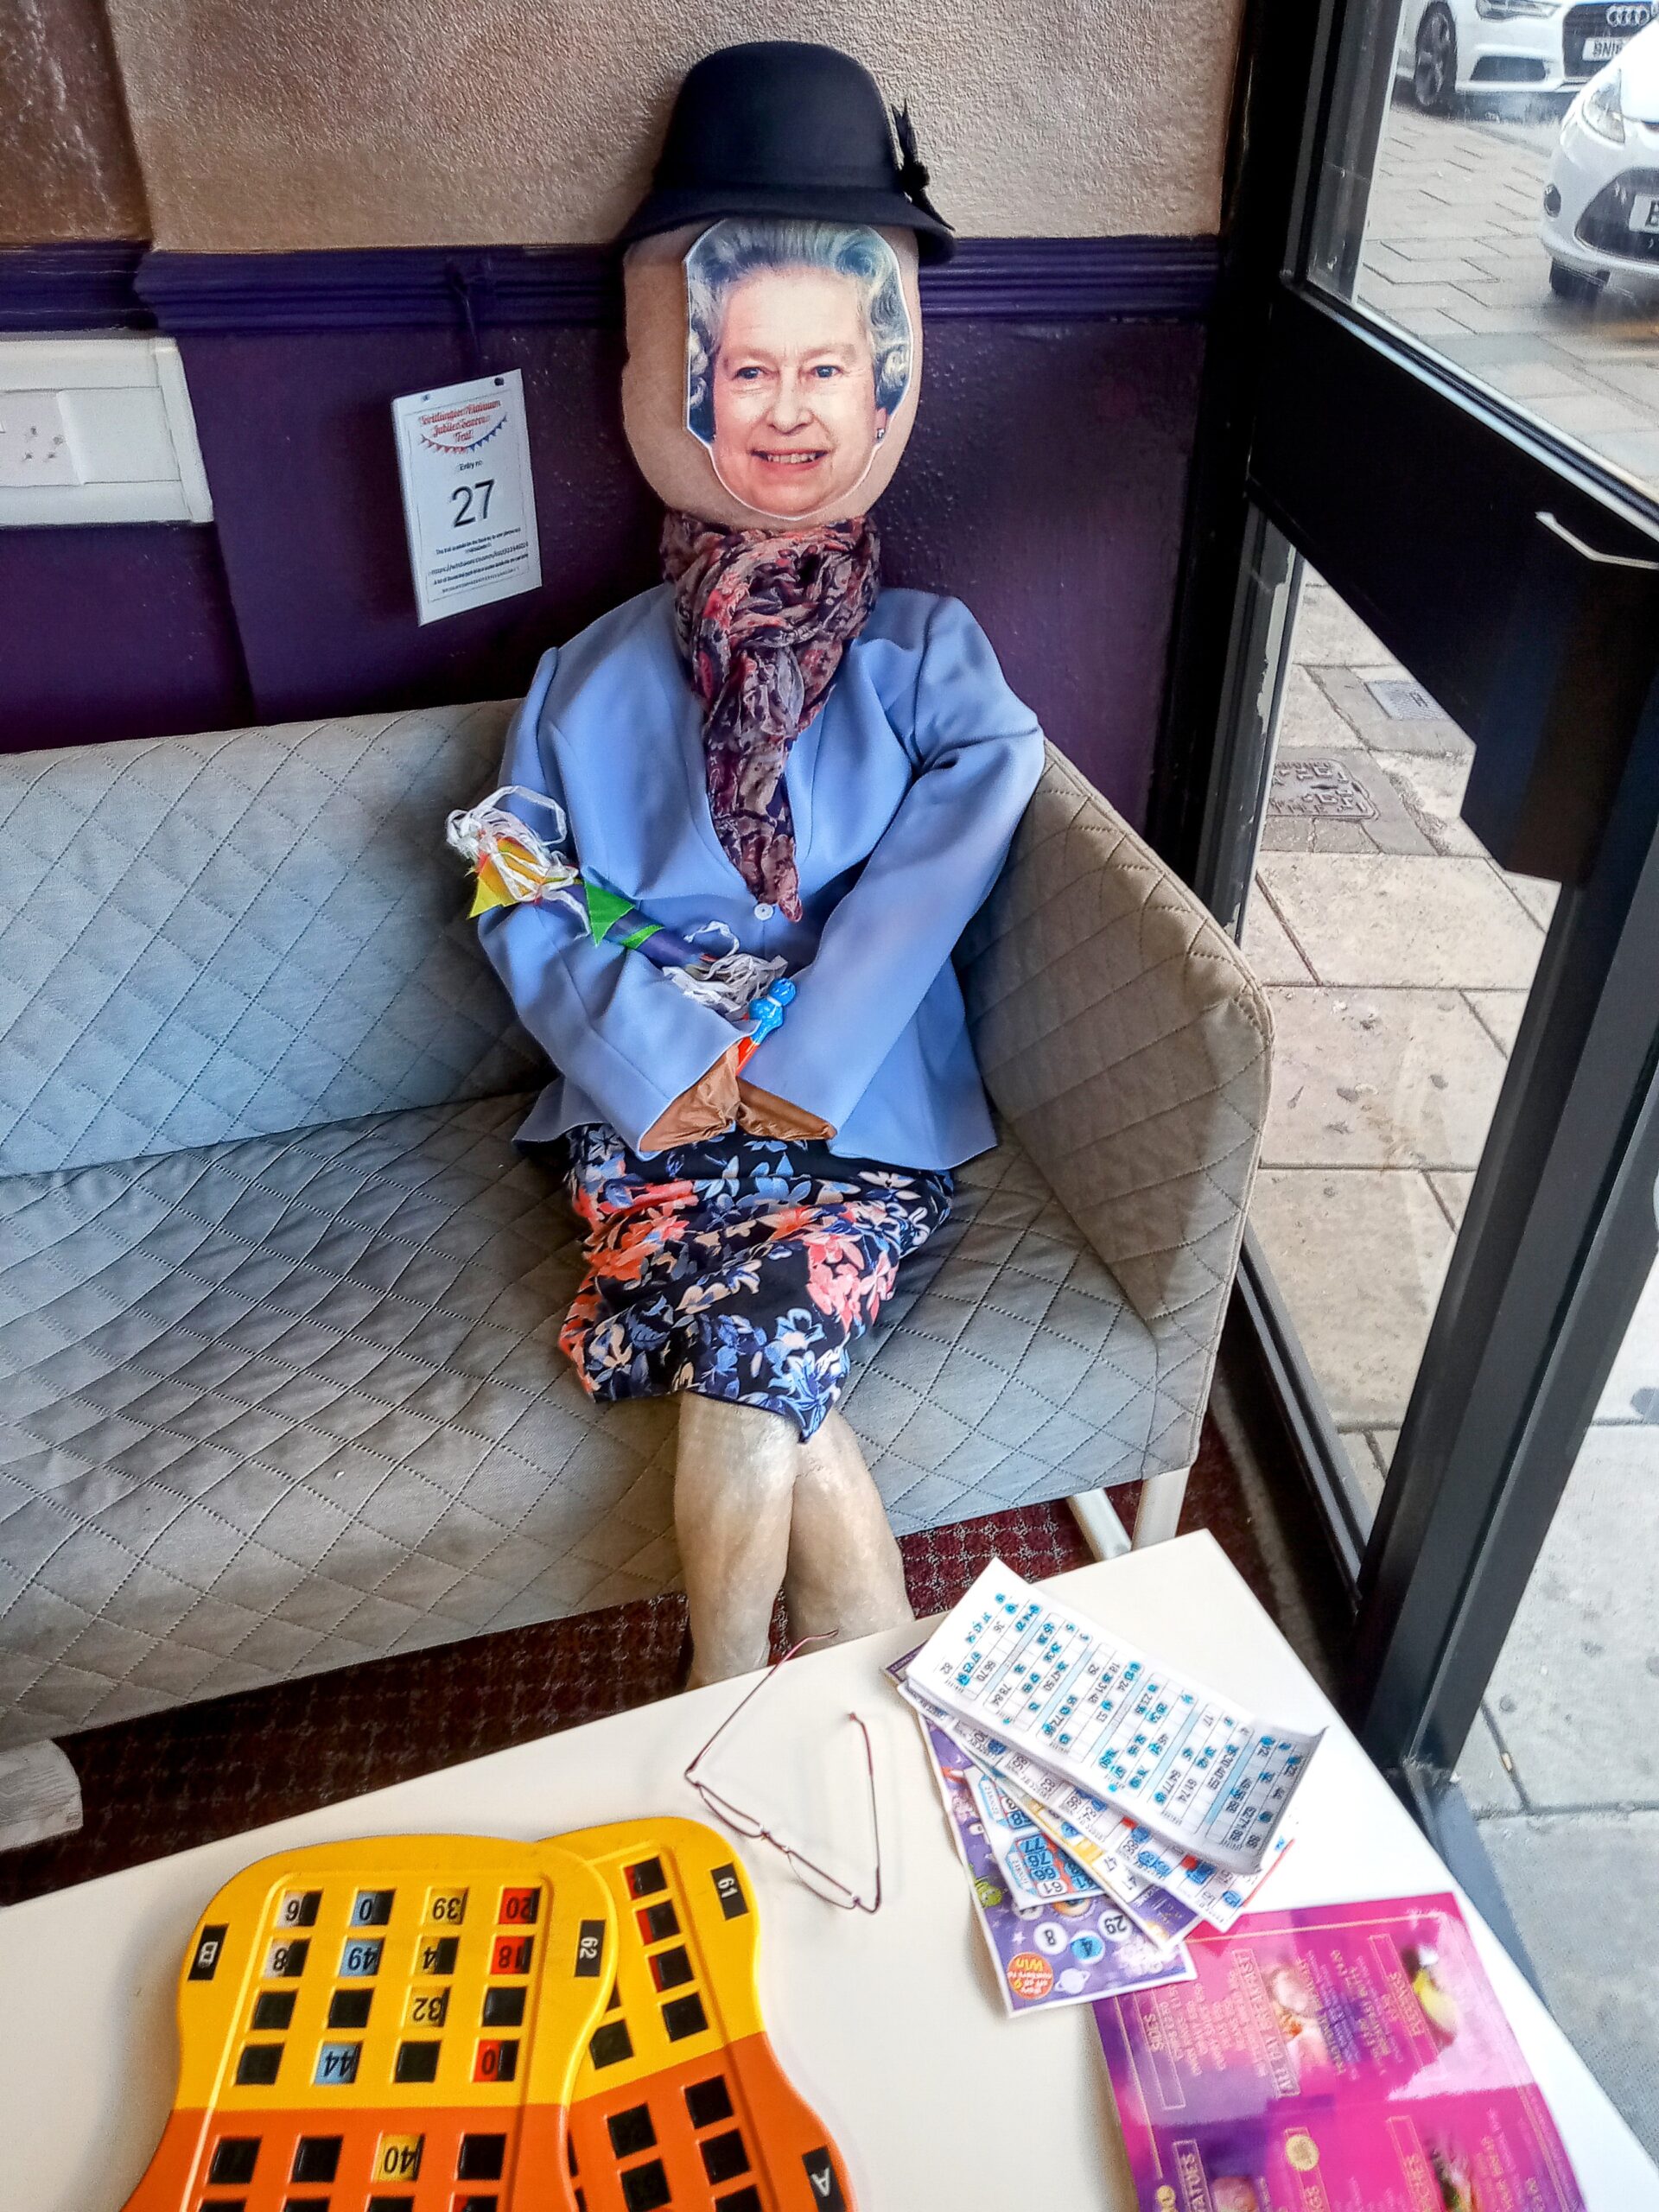 The Queen at bingo